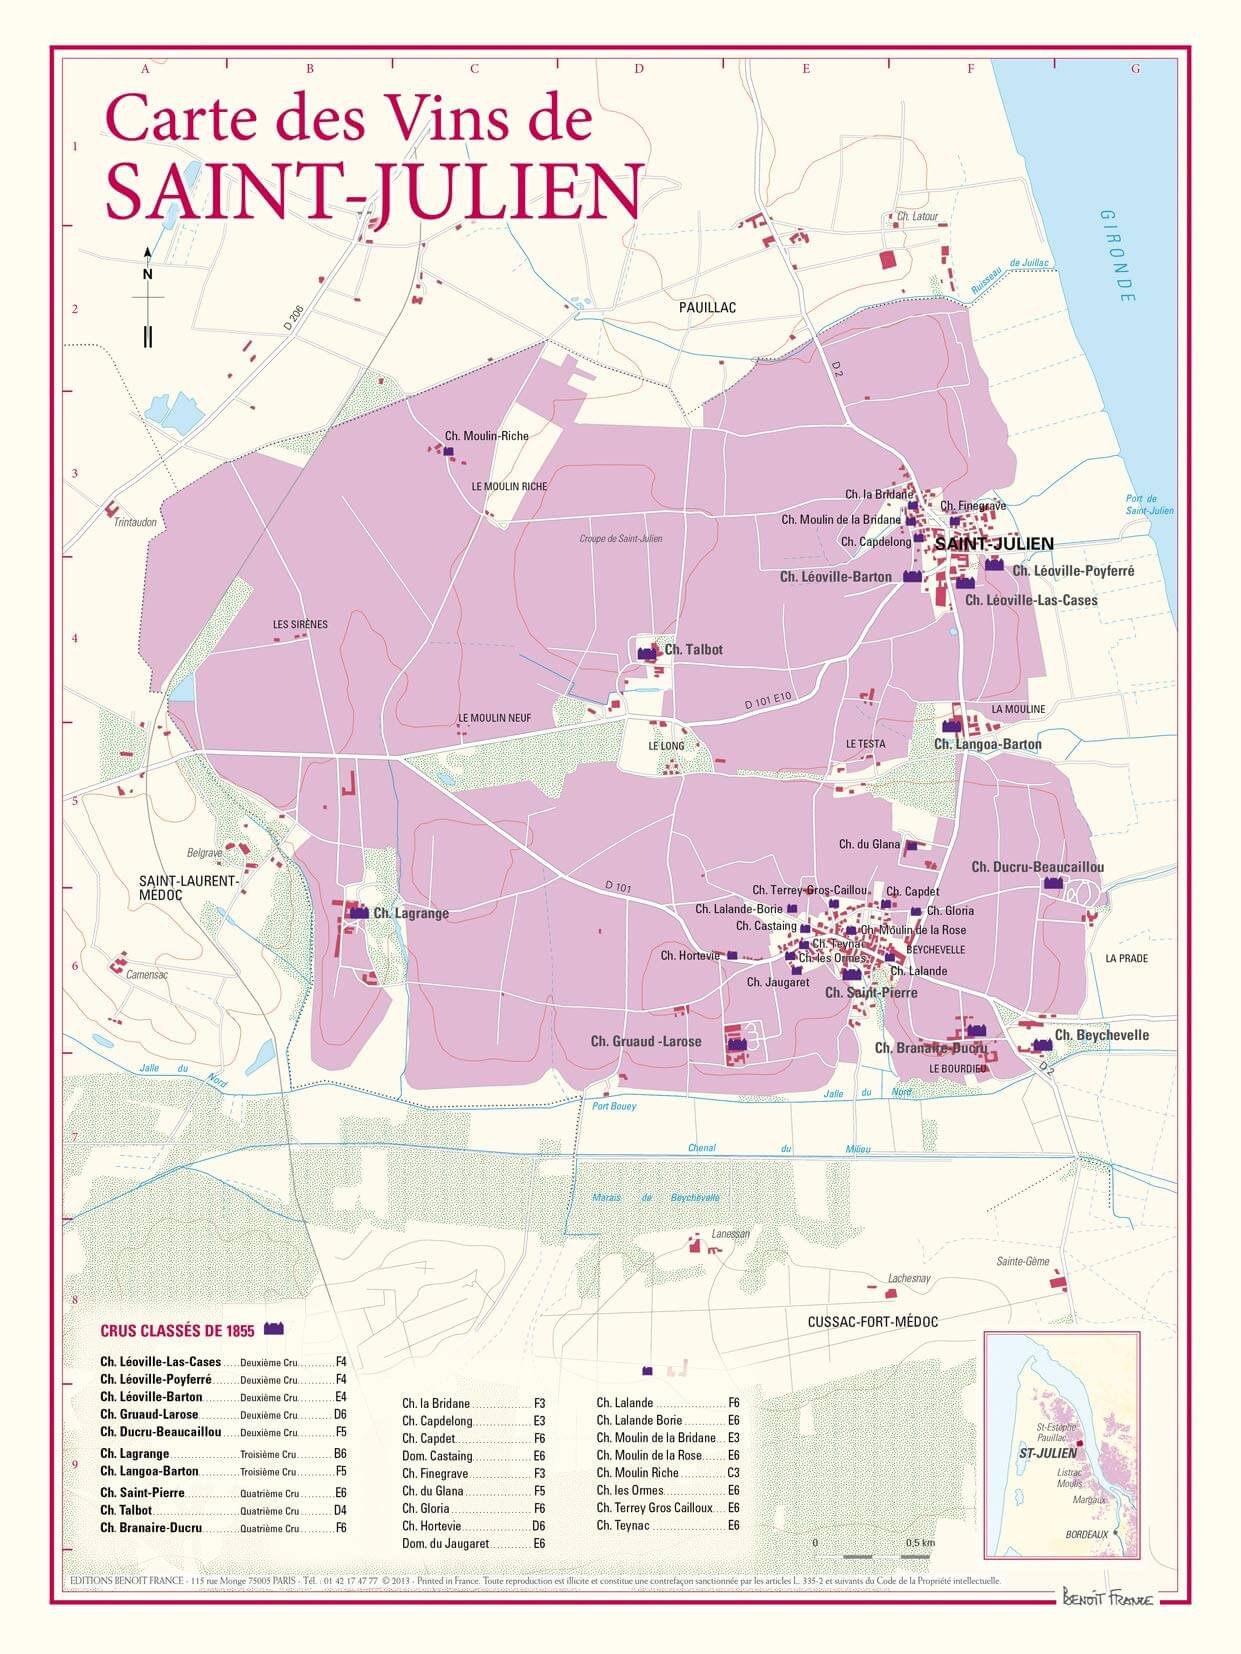 Carte des Vins de St Julian.jpg